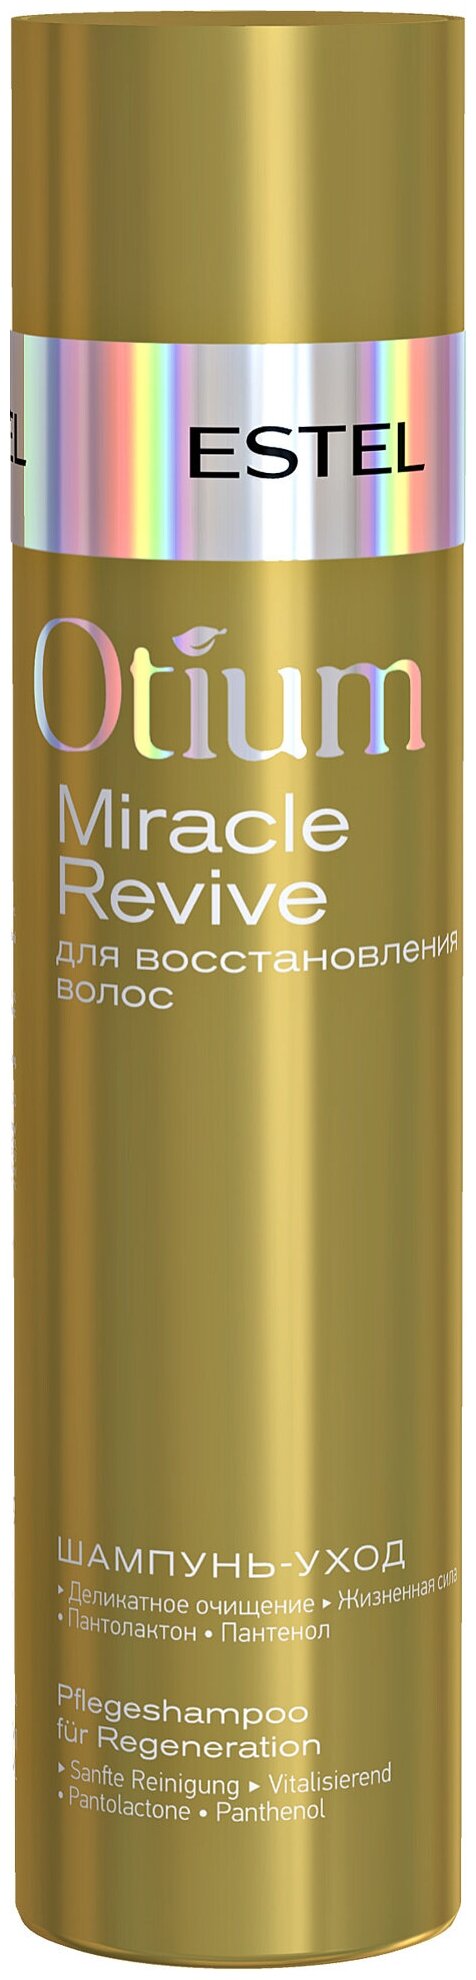 Шампунь-уход ESTEL для восстановления волос Otium Miracle Revive, 250 мл